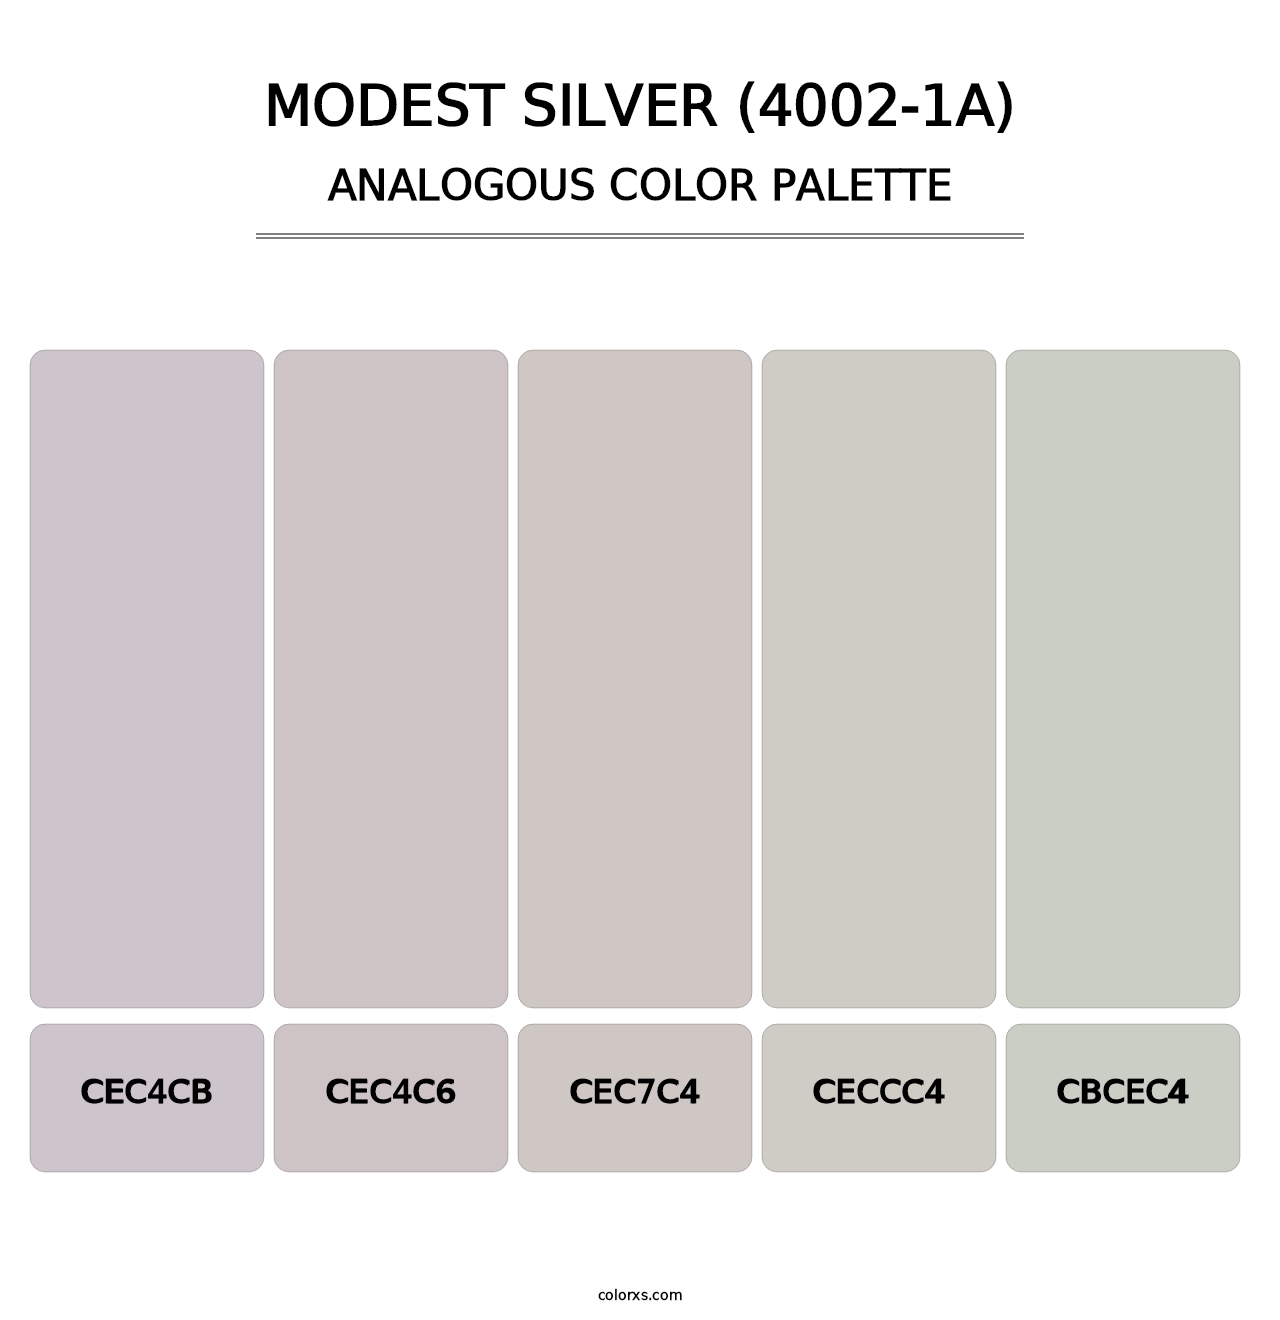 Modest Silver (4002-1A) - Analogous Color Palette